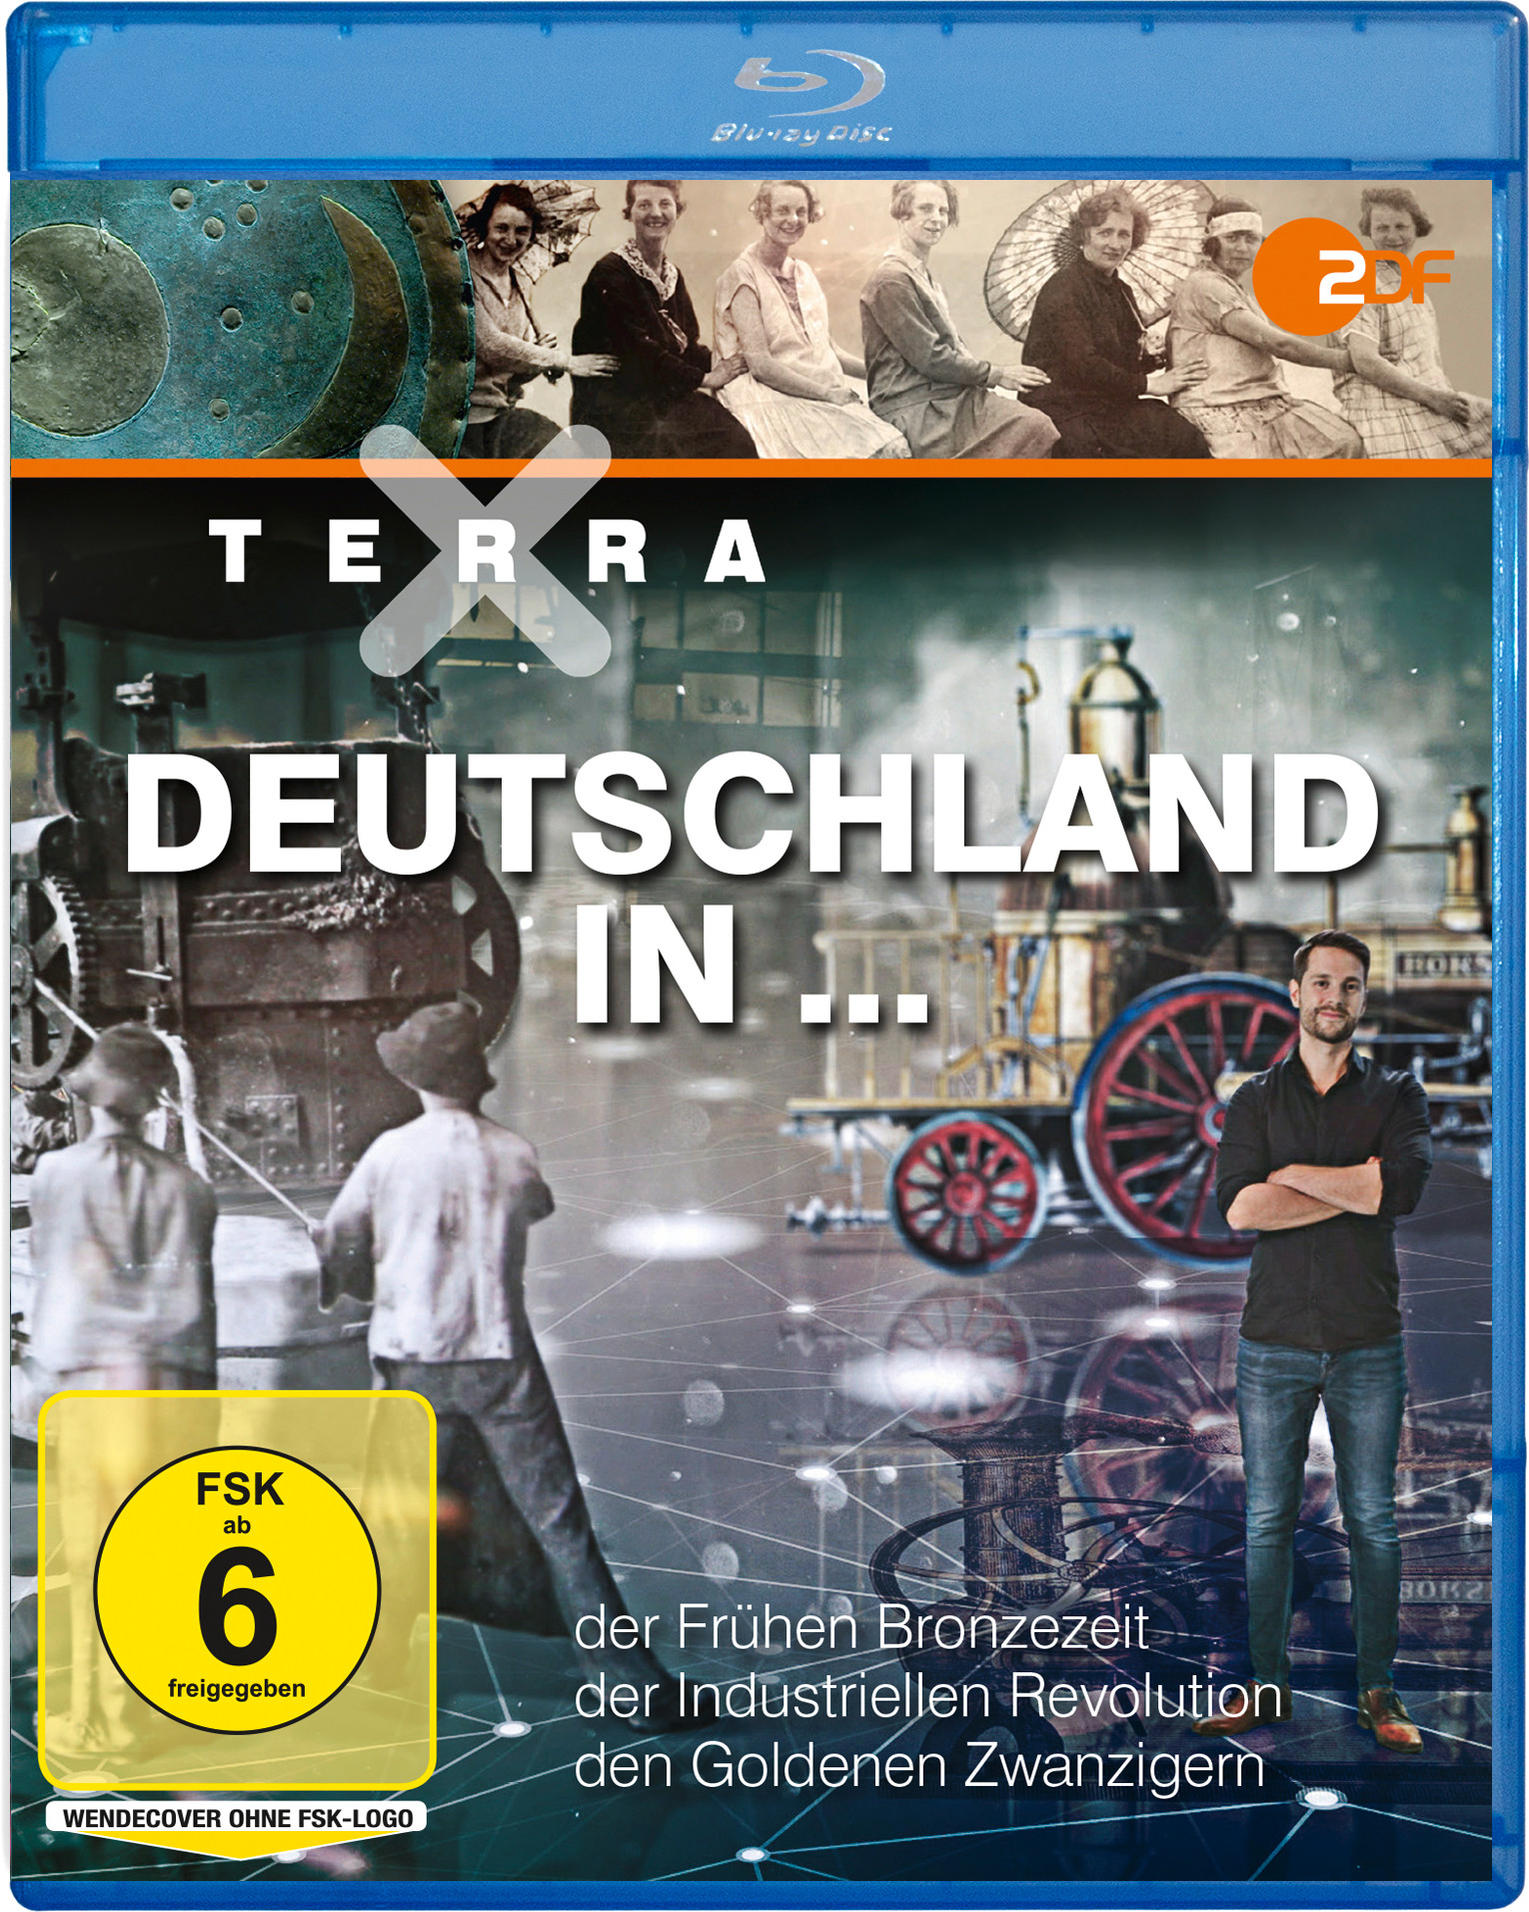 Terra X: Deutschland Blu-ray in 